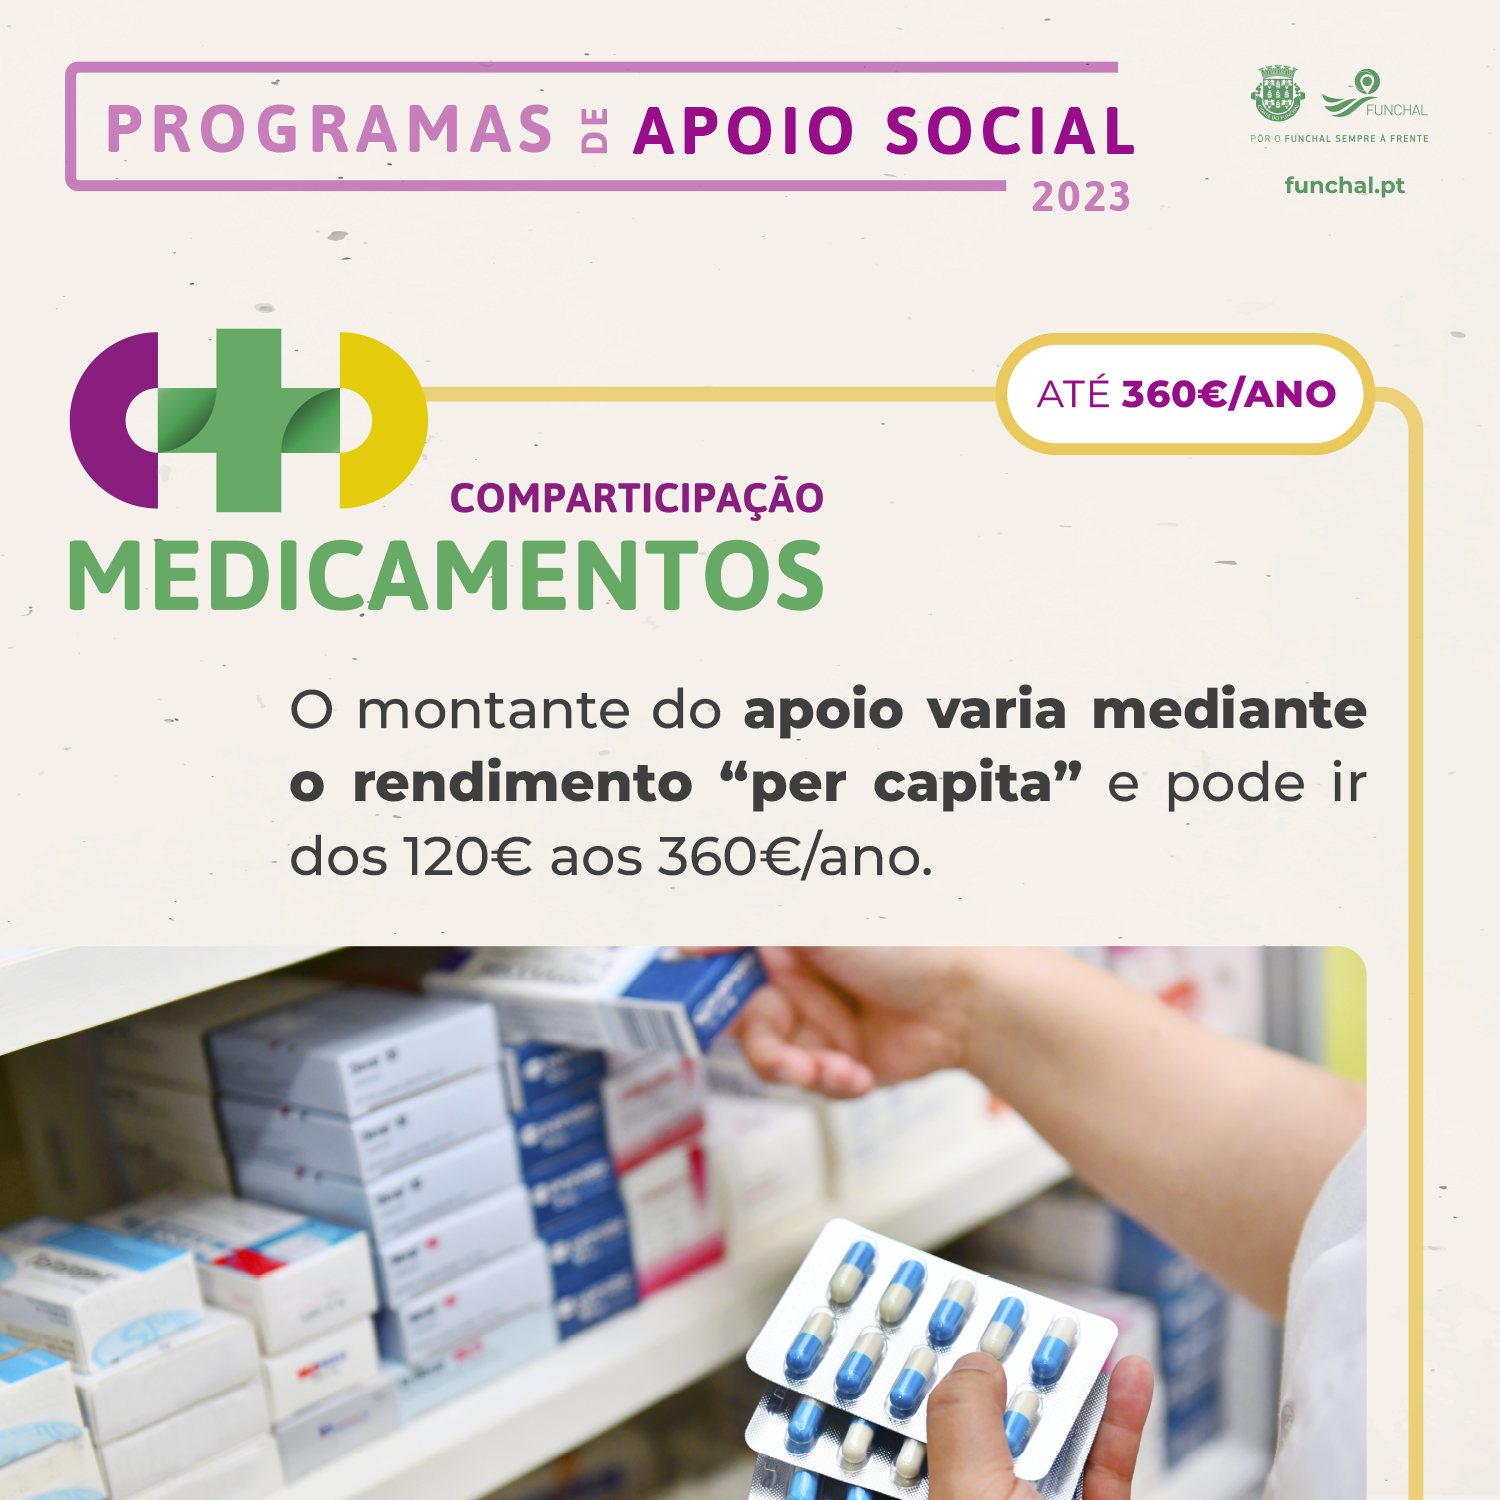 Programas de Apoio Social - Comparticipação de Medicamentos